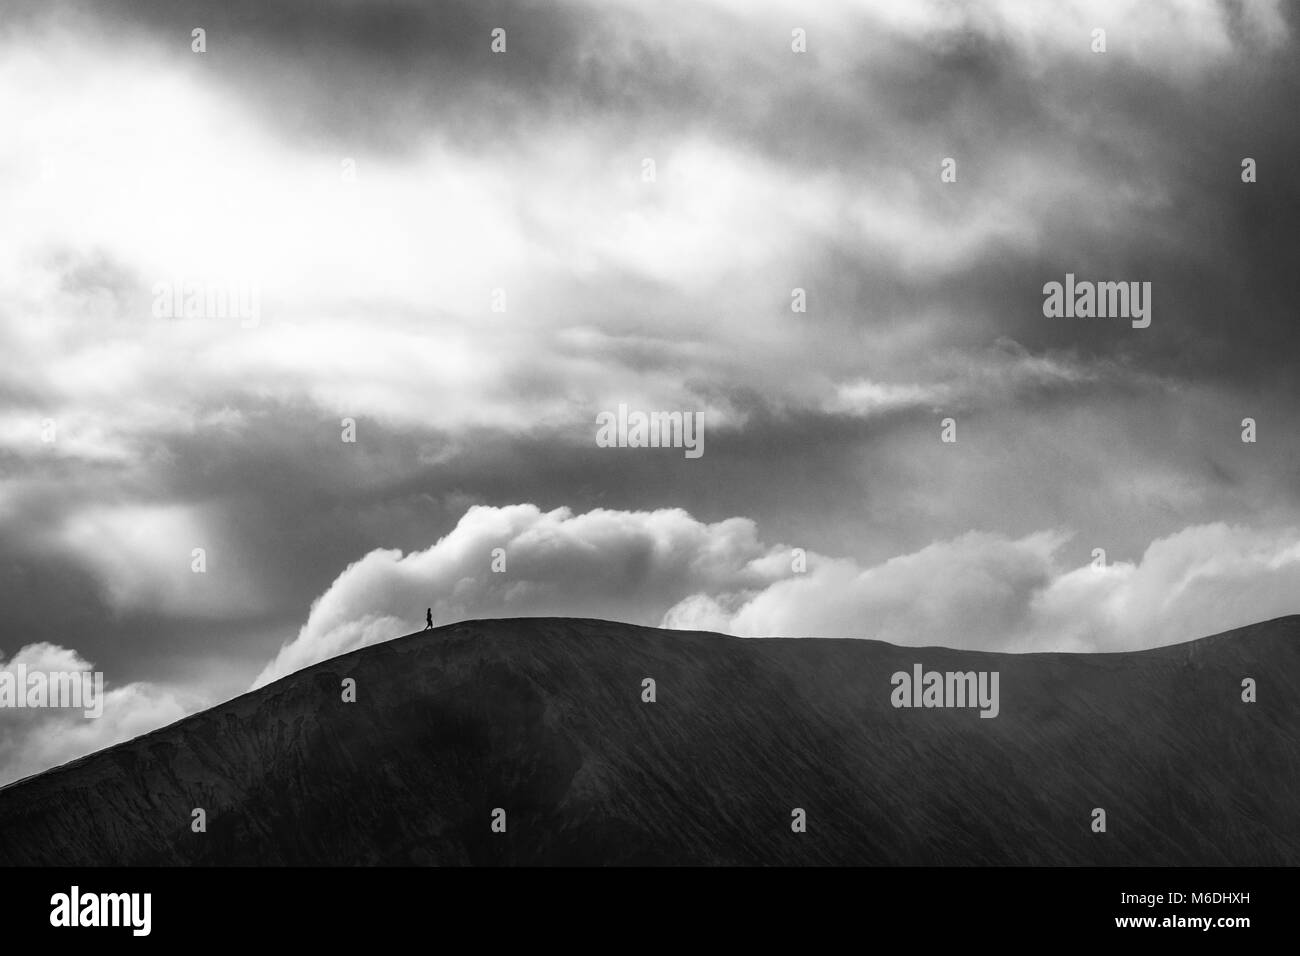 Un noir et blanc capture intemporel d'une personne marchant sur le cratère du volcan Bromo Mount massive en vertu de l'nuages lourds Banque D'Images